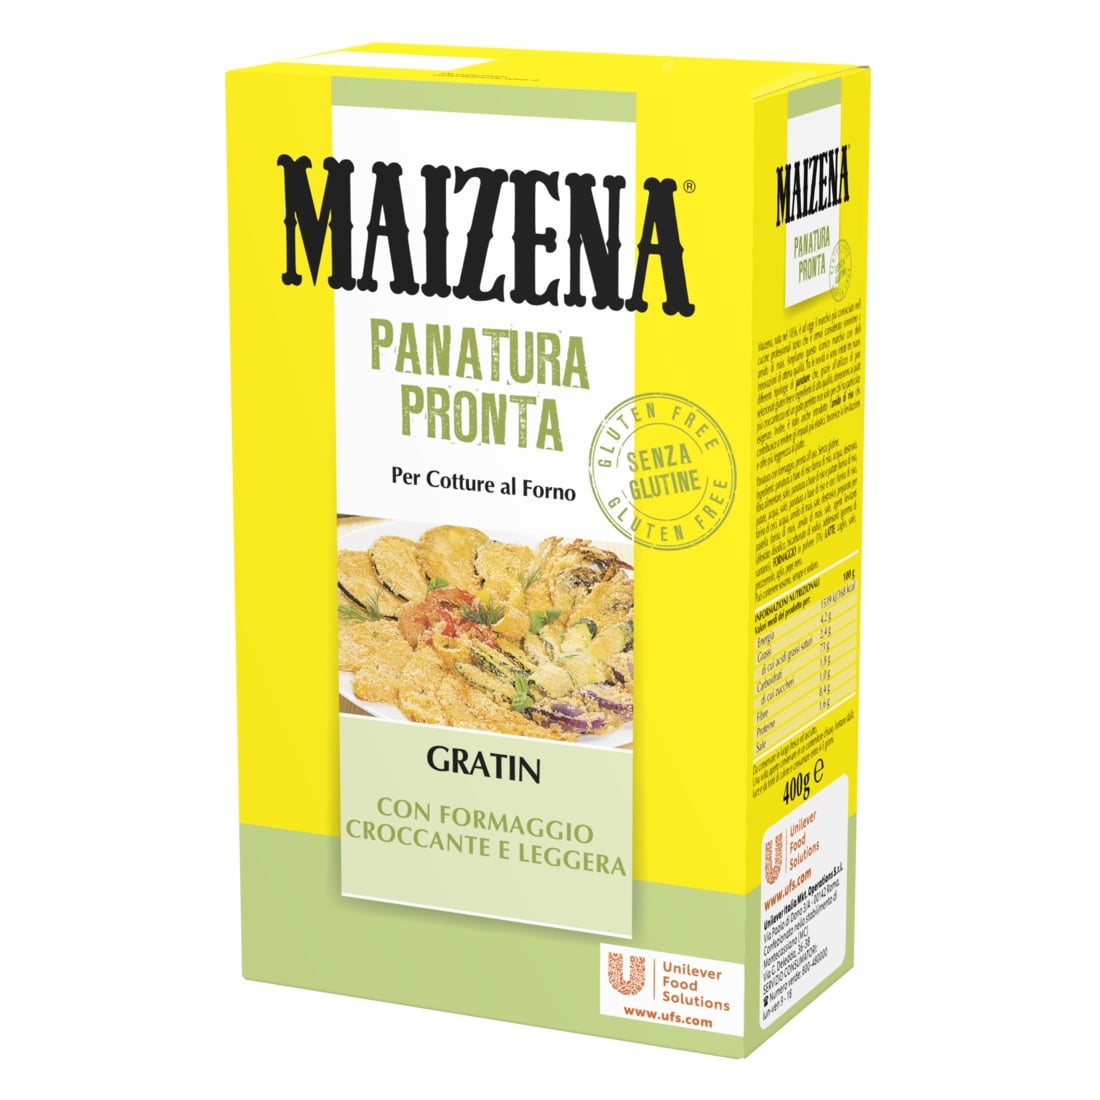 Maizena Panatura Gratin - Gli ingredienti già miscelati permettono allo chef di abbreviare i tempi di lavorazione in cucina e di evitare i rischi di contaminazione da glutine